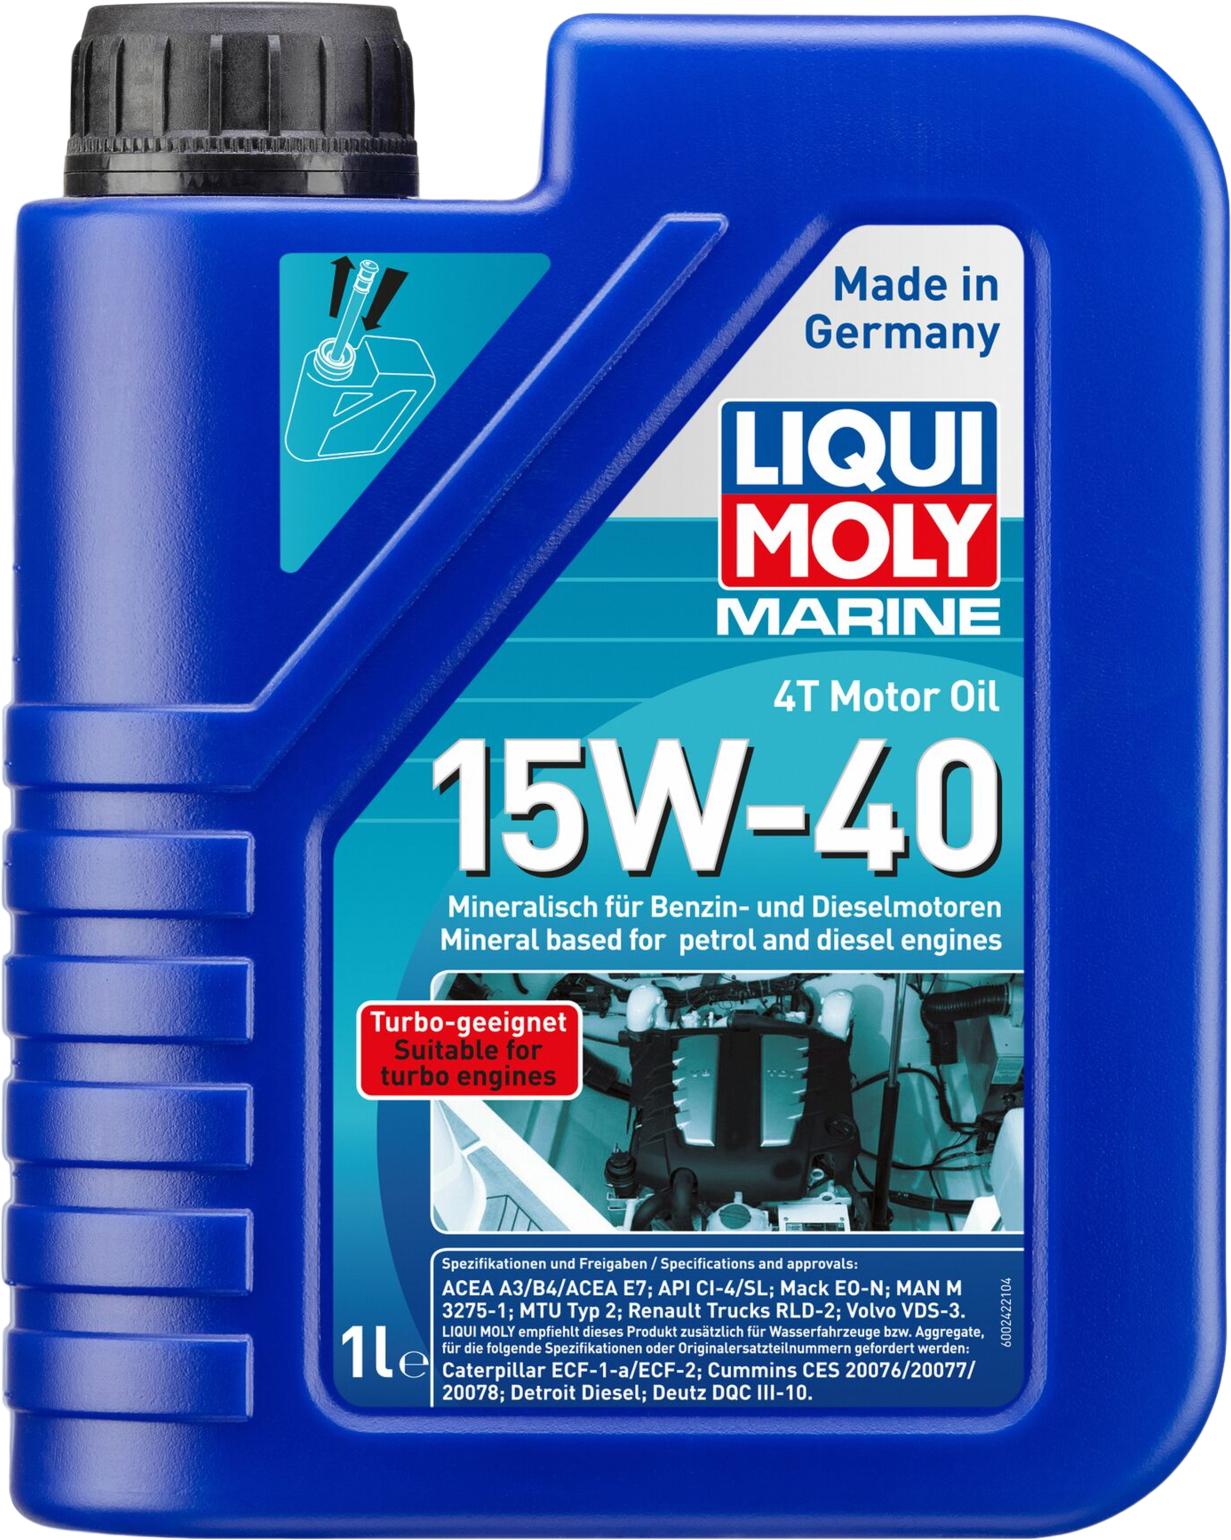 Liqui Moly Marine 4T Motor Oil 15W-40, 6 x 1 lt detail 2